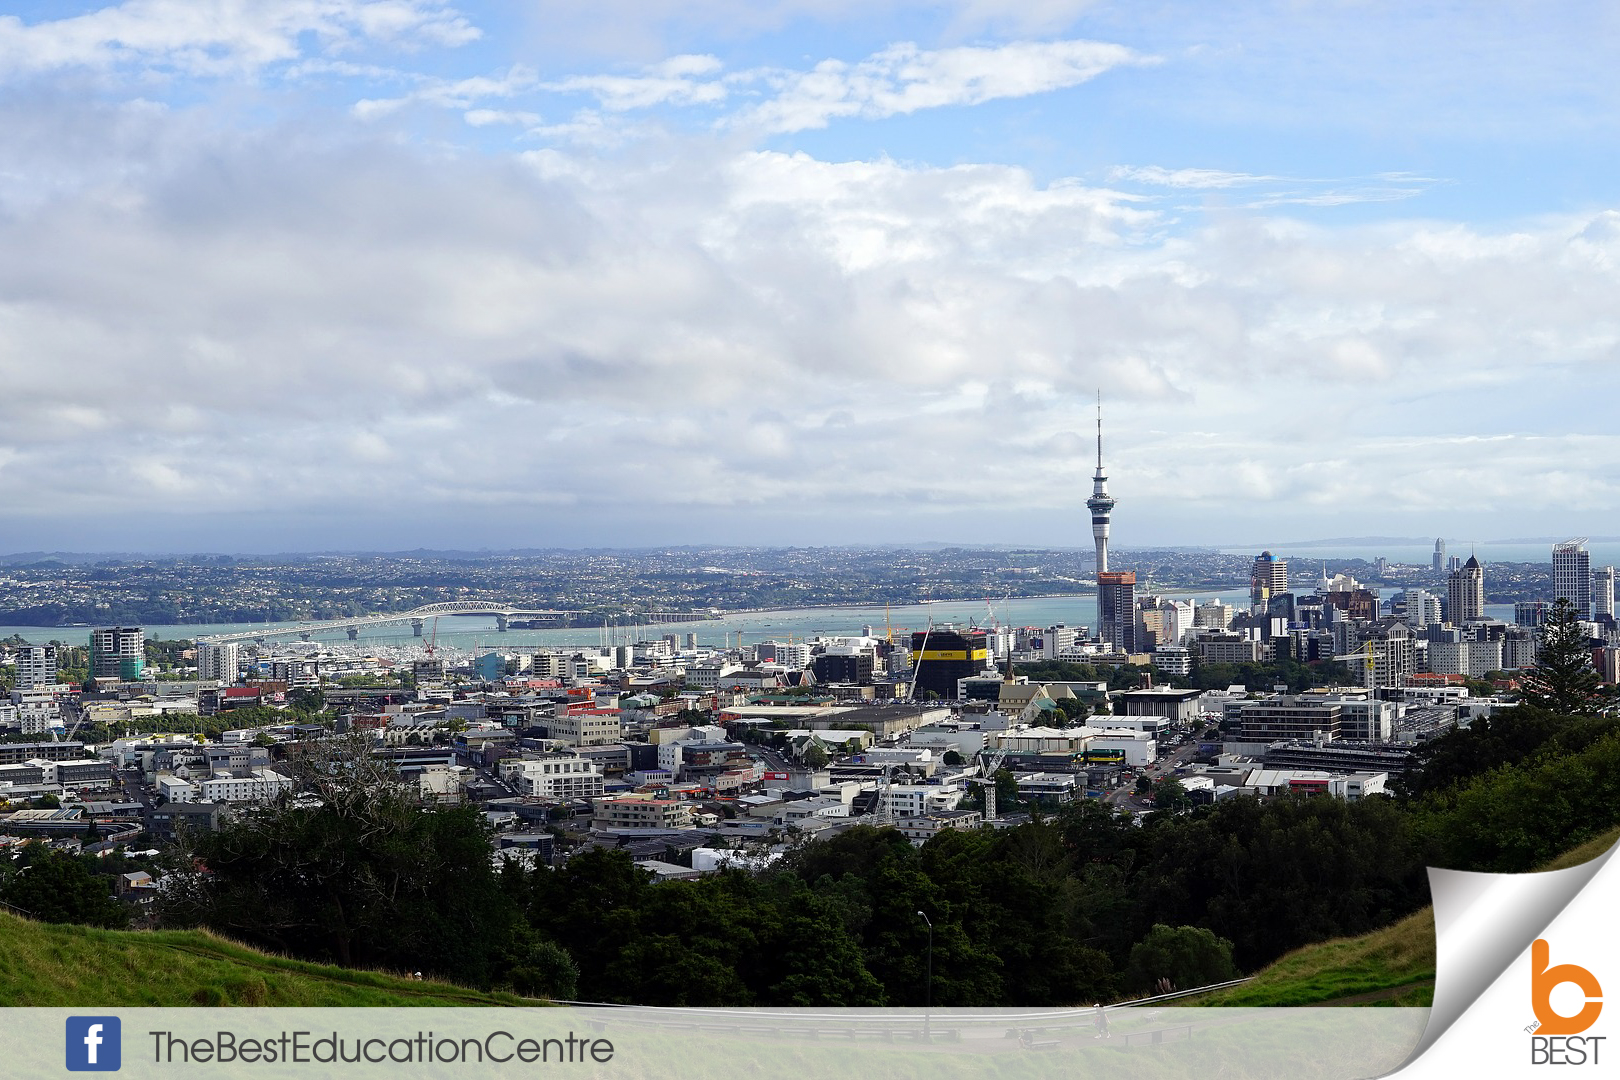 น้องดรีม เรียนต่อนิวซีแลนด์ ท่องเที่ยว เดอะเบสท์ New Zealand Auckland โอ๊คแลนด์ วีซ่านิวซีแลนด์ ชีวิตเด็กนอก เที่ยวโอ๊คแลนด์ เรียนต่อต่างประเทศ